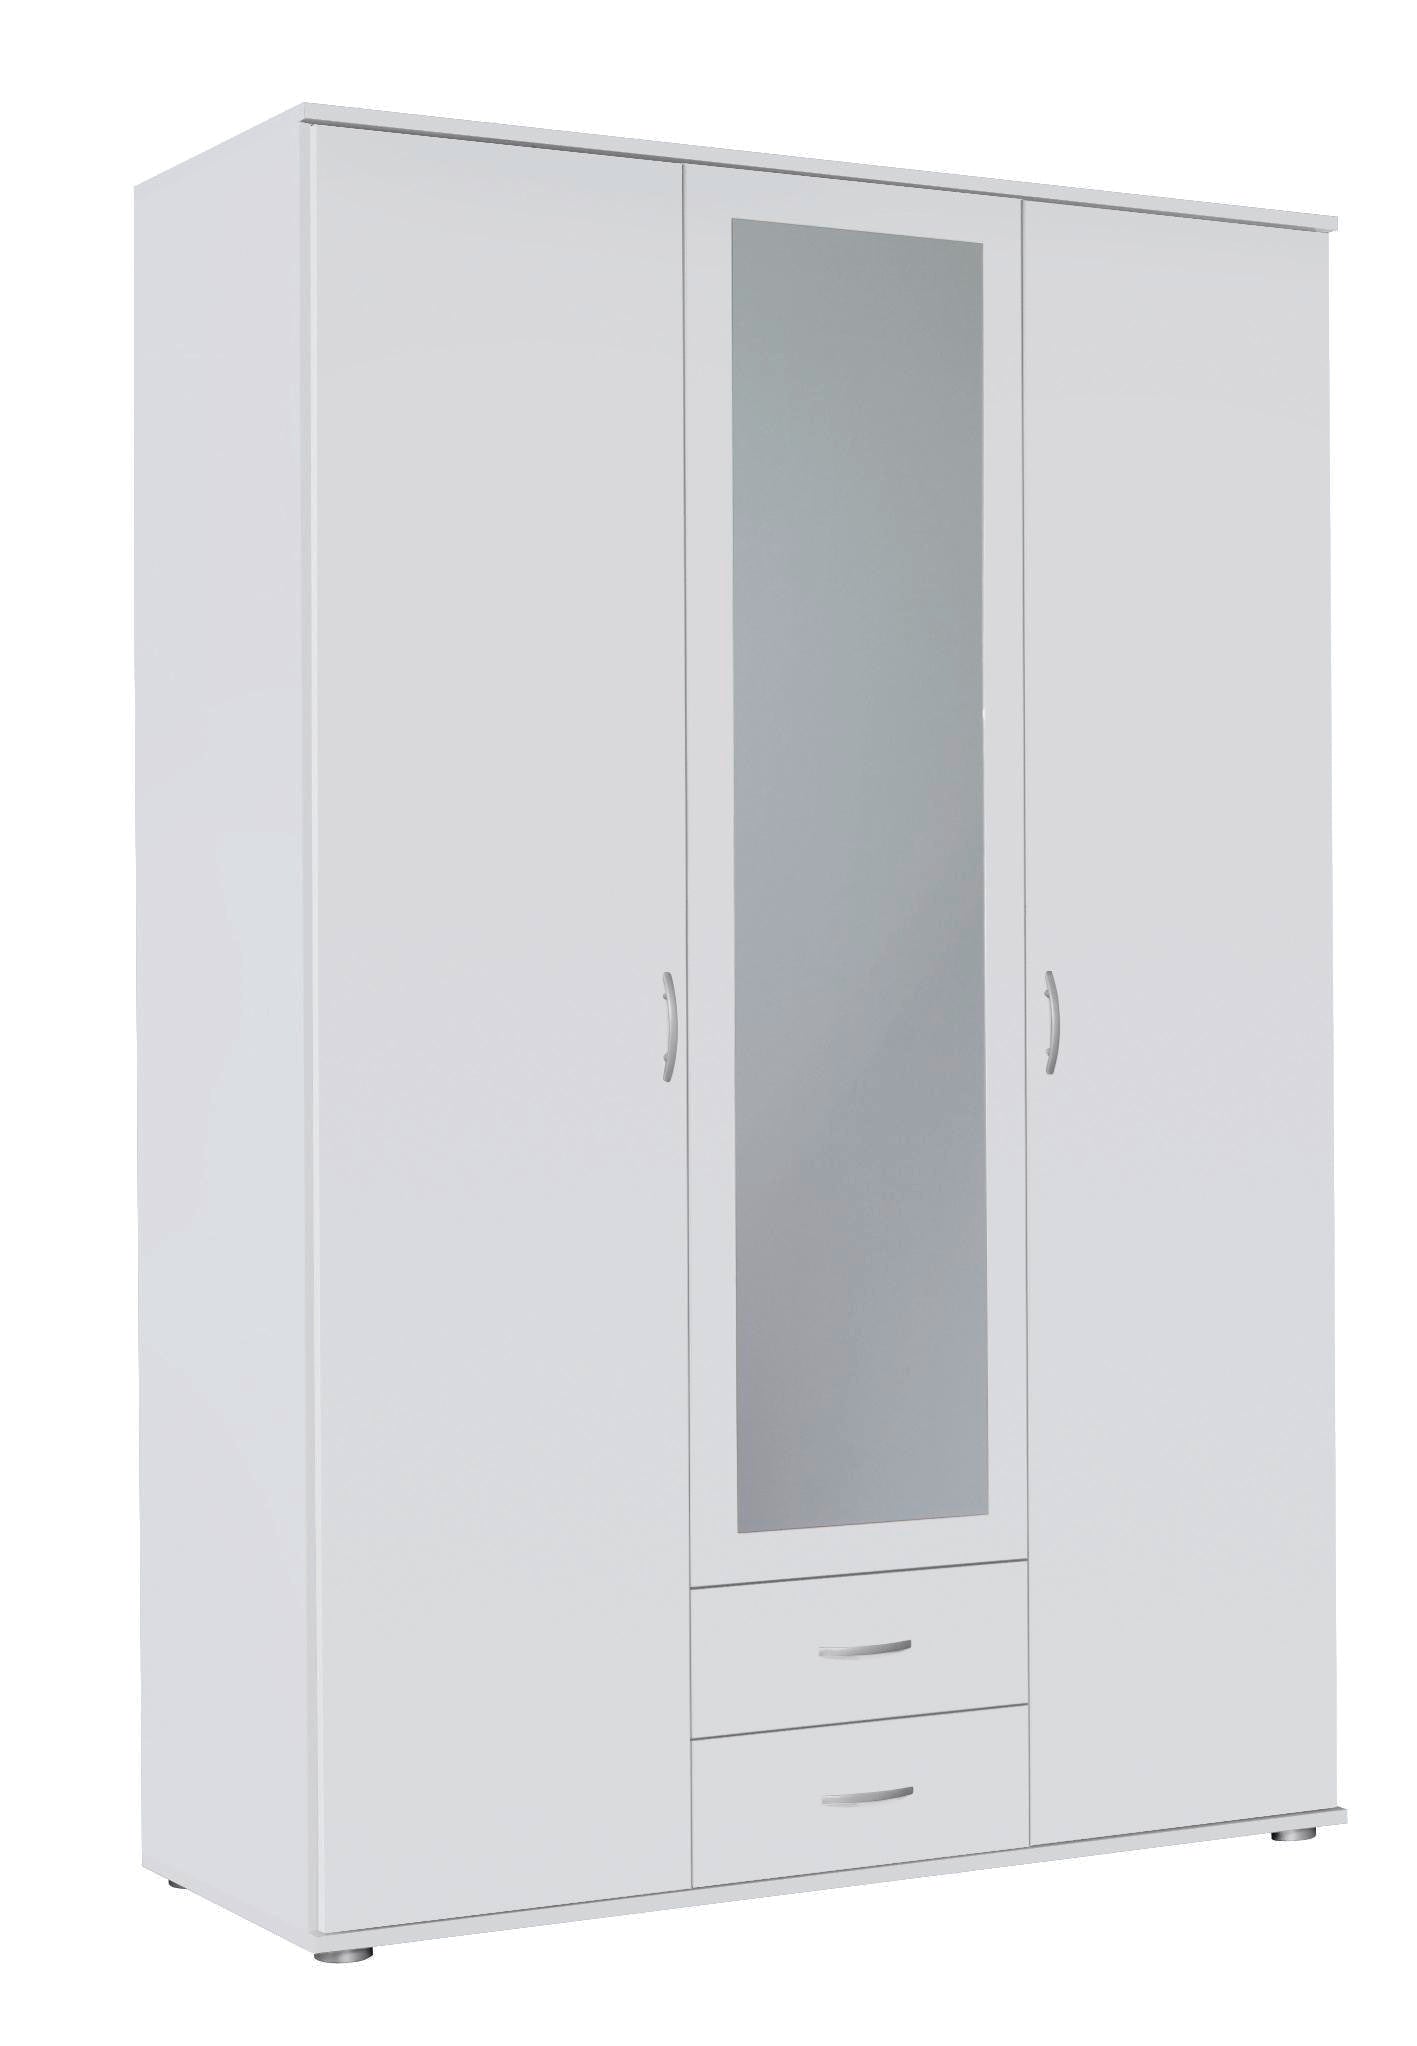 Kleiderschrank Sara weiß 3 Türen (1 mit Spiegelfront) + 1 große Schublade weiß B 127 cm - H 188 cm